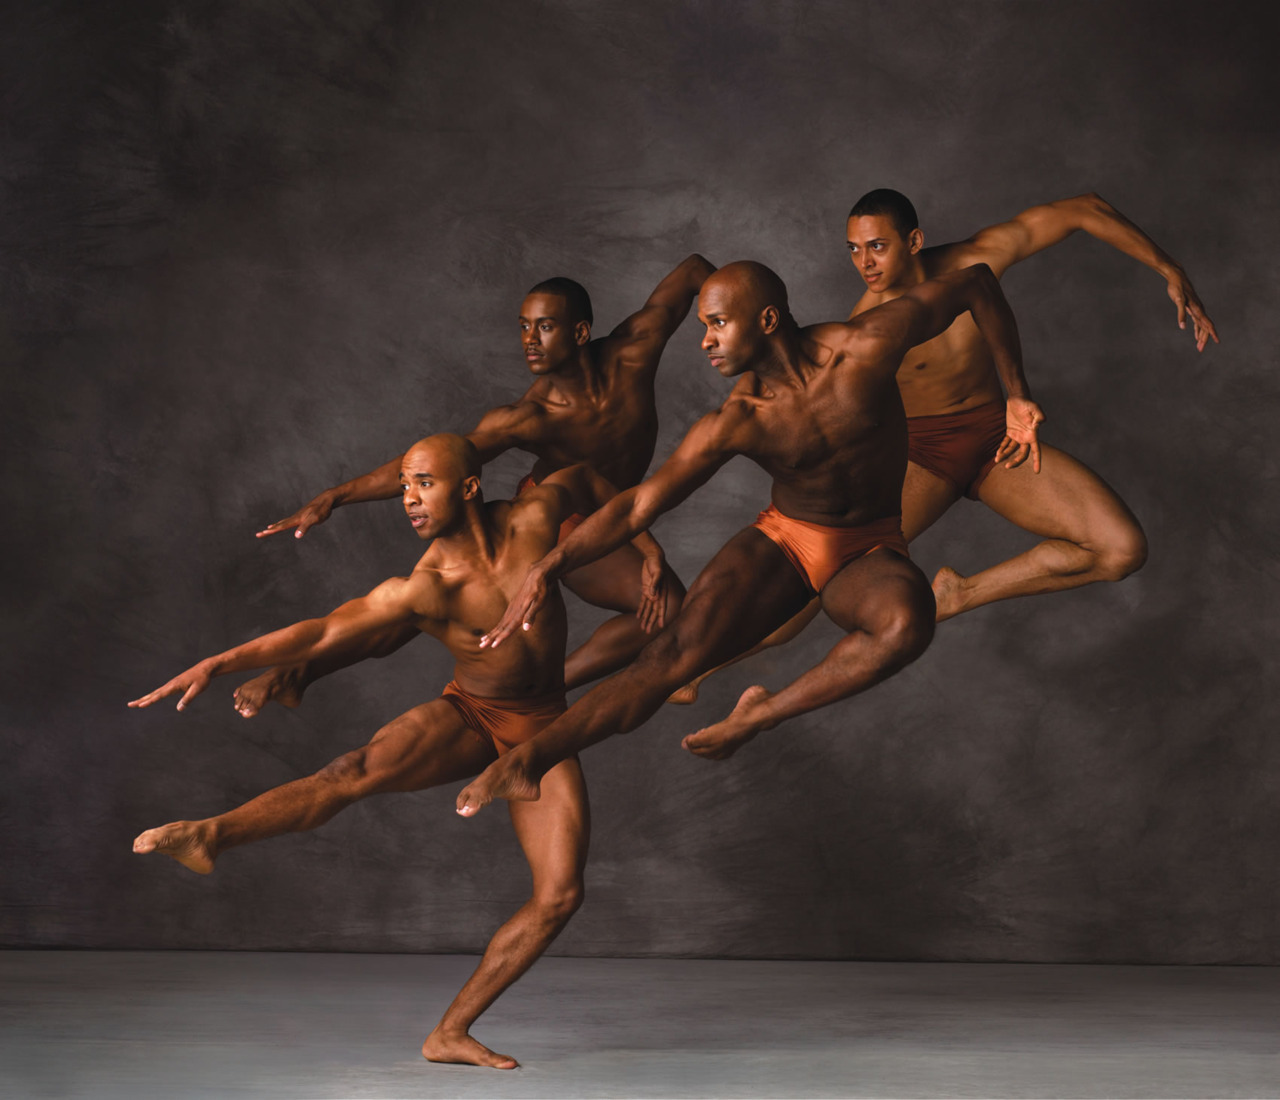 Голые балерины - фото эротика в балете танцующих балерин